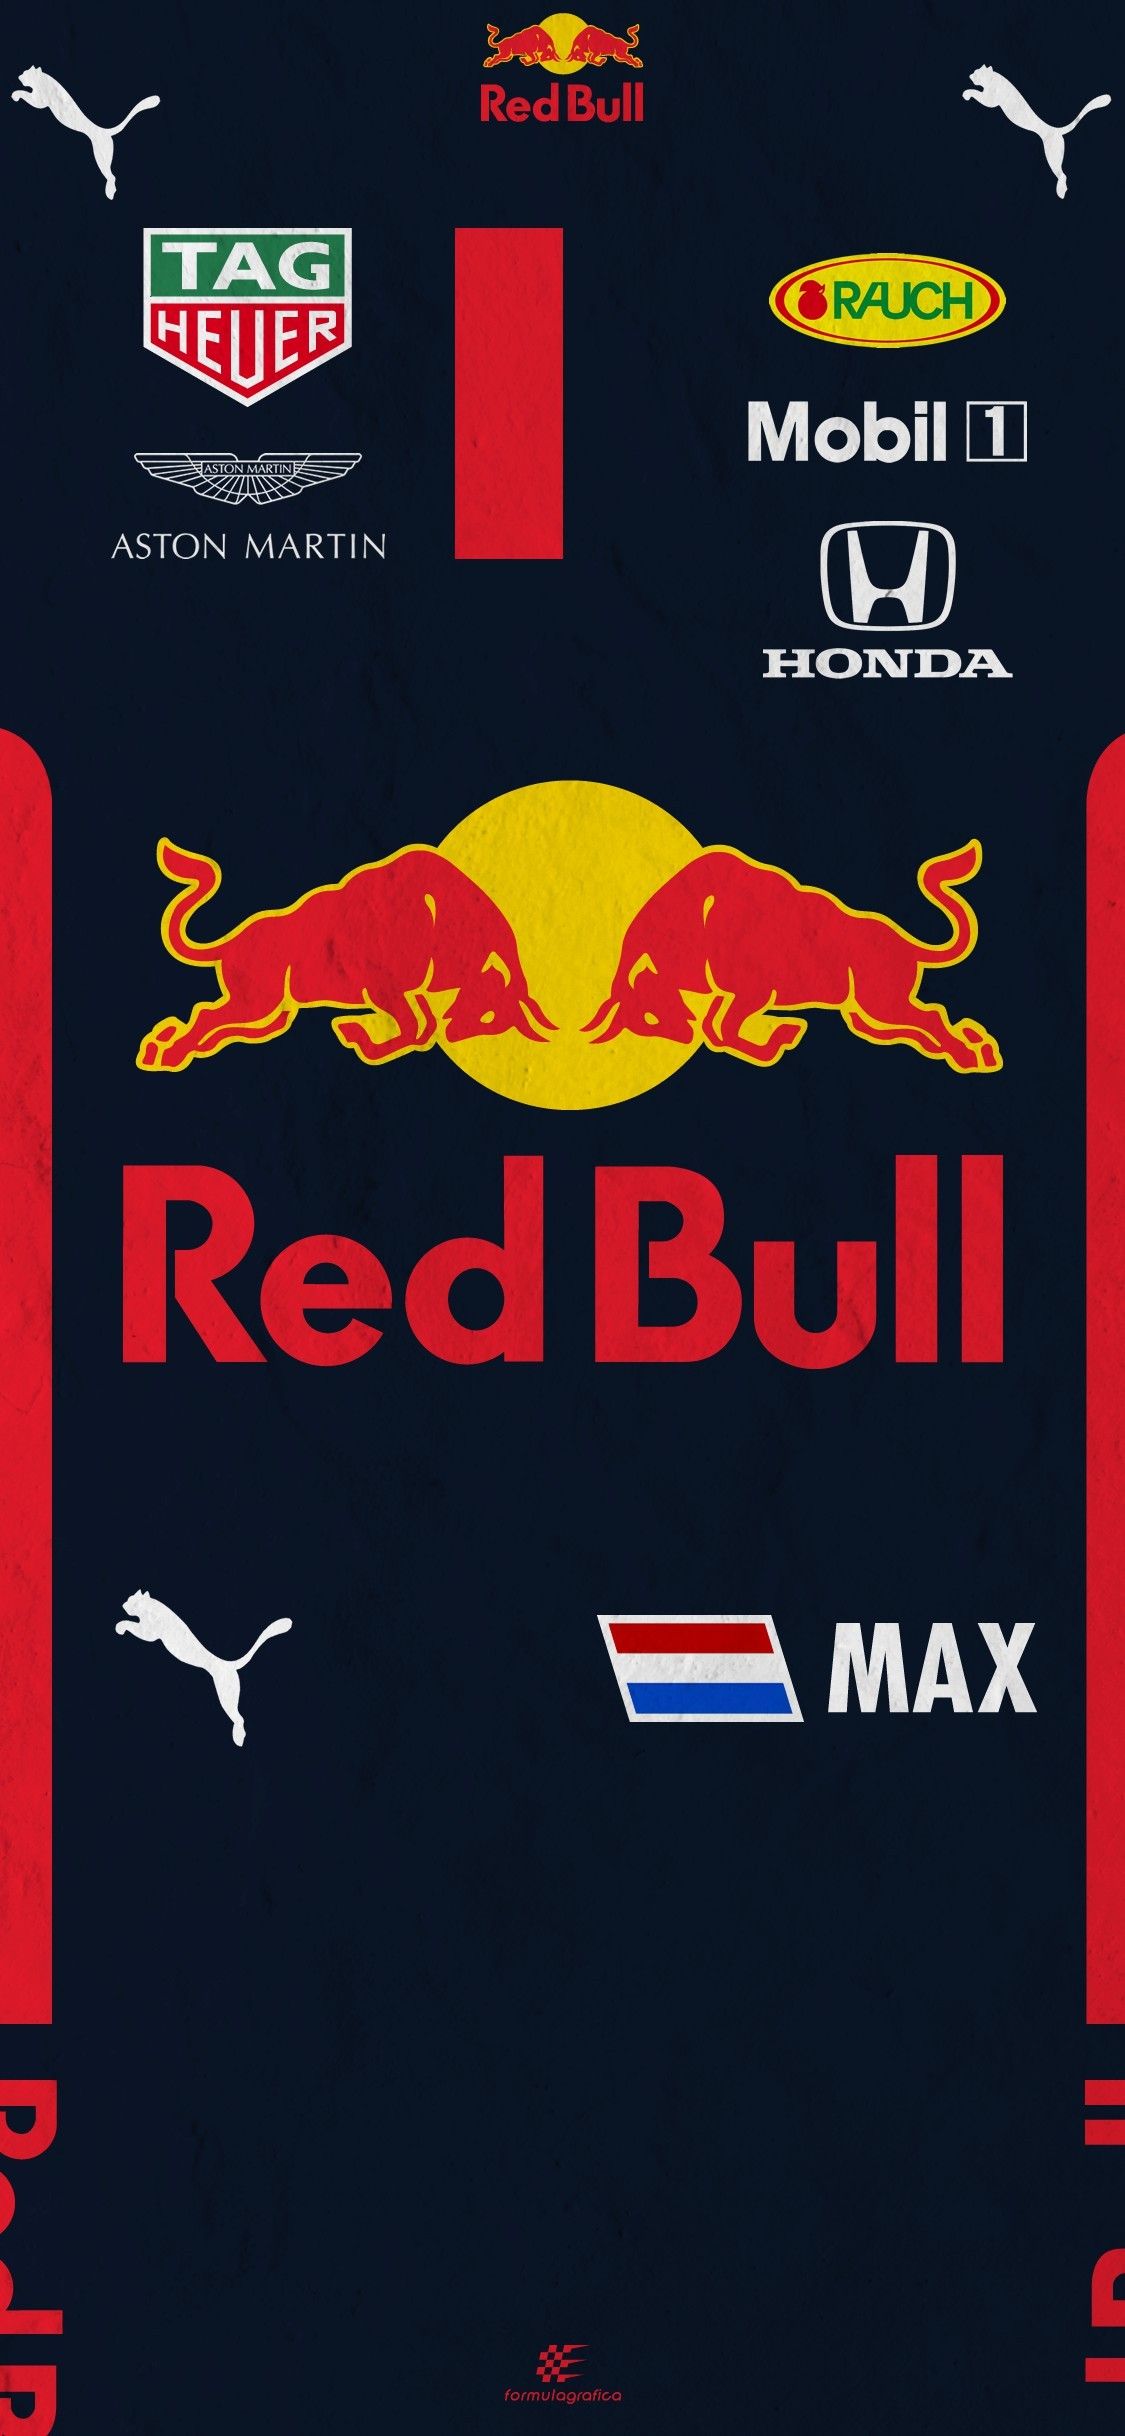 Max Verstappen team suit Martin Red Bull